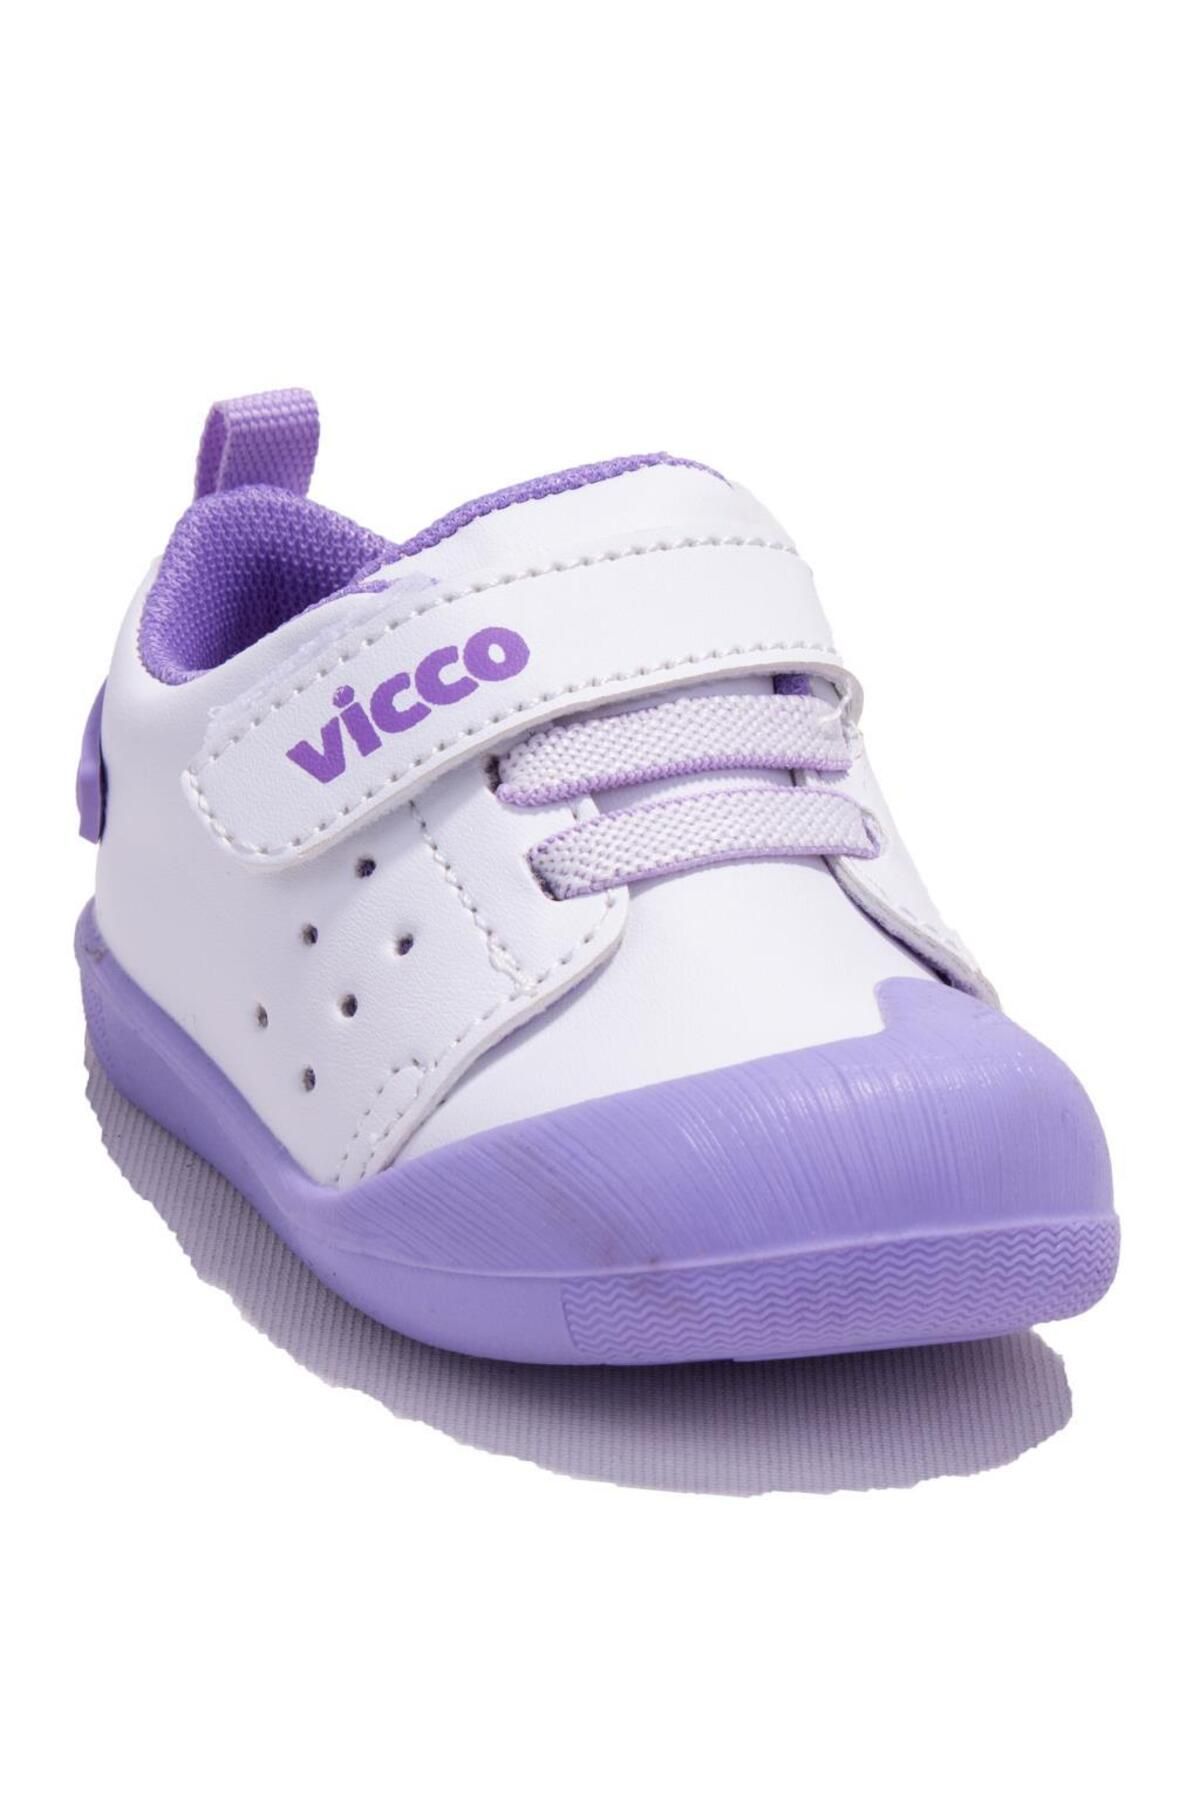 Vicco Oli 950e23y211c Lila Ortopedik Günlük Kız Çocuk Spor Ayakkabı